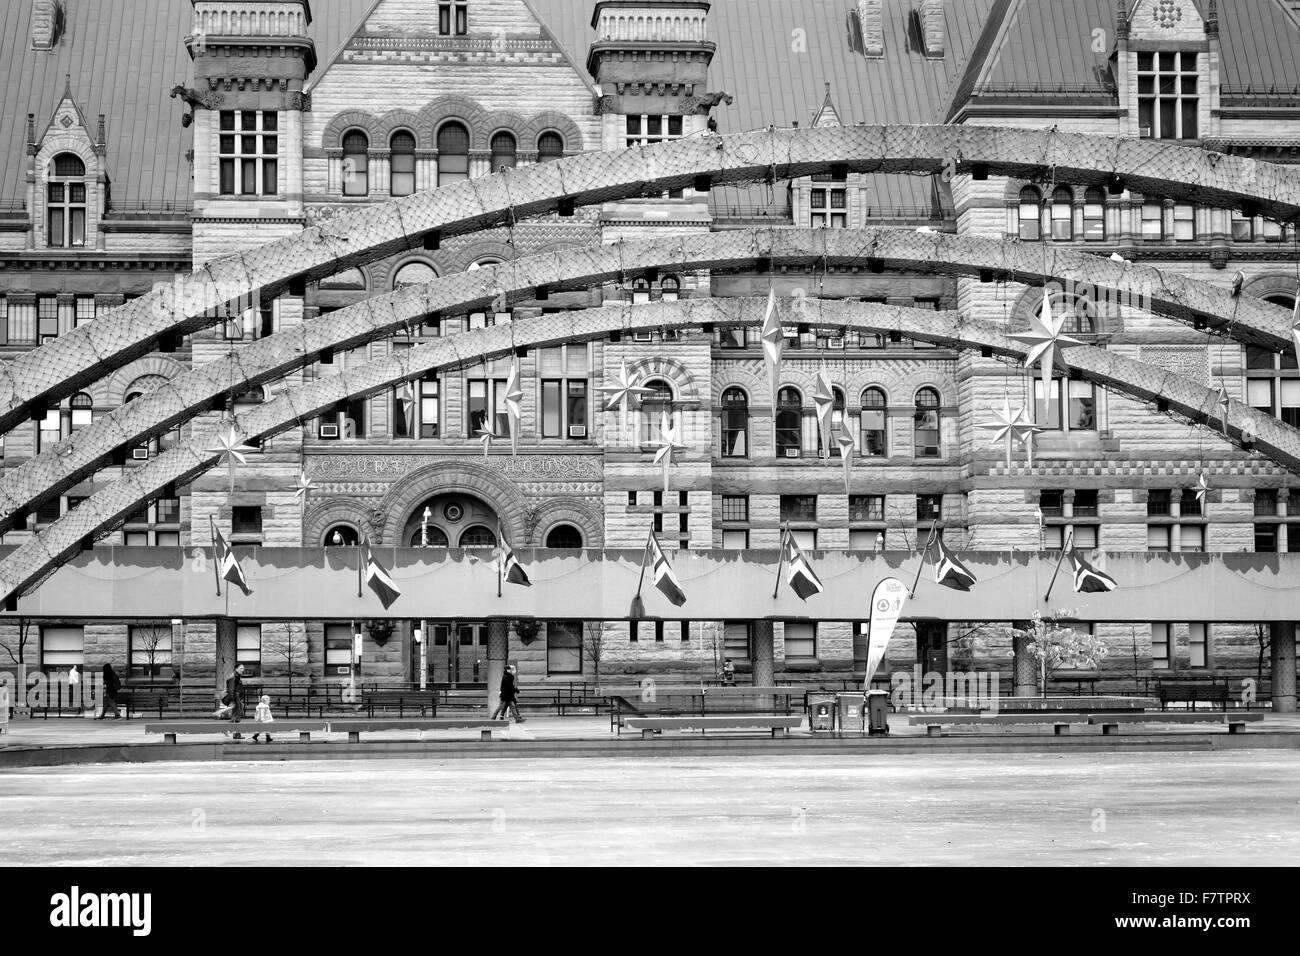 Architektonische Details von Nathan Phillips Square und das alte Rathaus in Toronto, Kanada Stockfoto